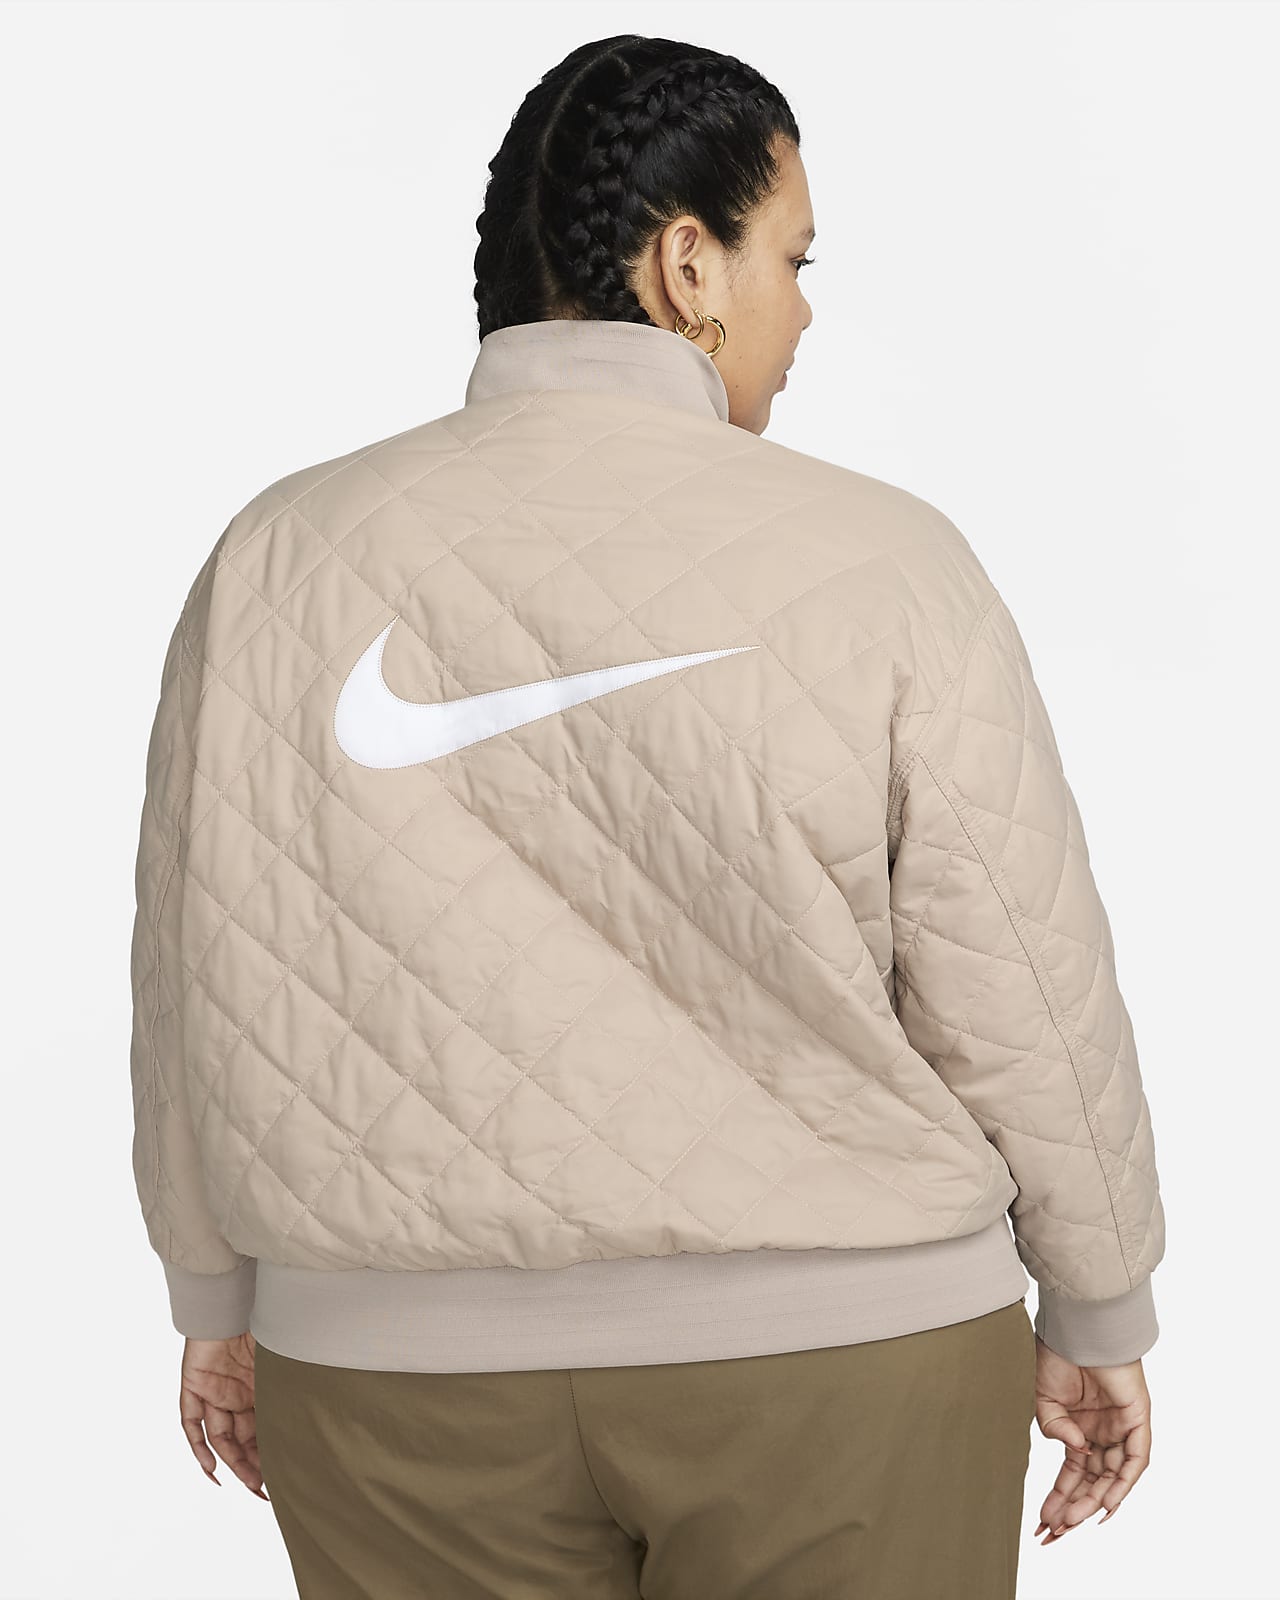 Nike Women's Sportswear Reversible Bomber Jacket